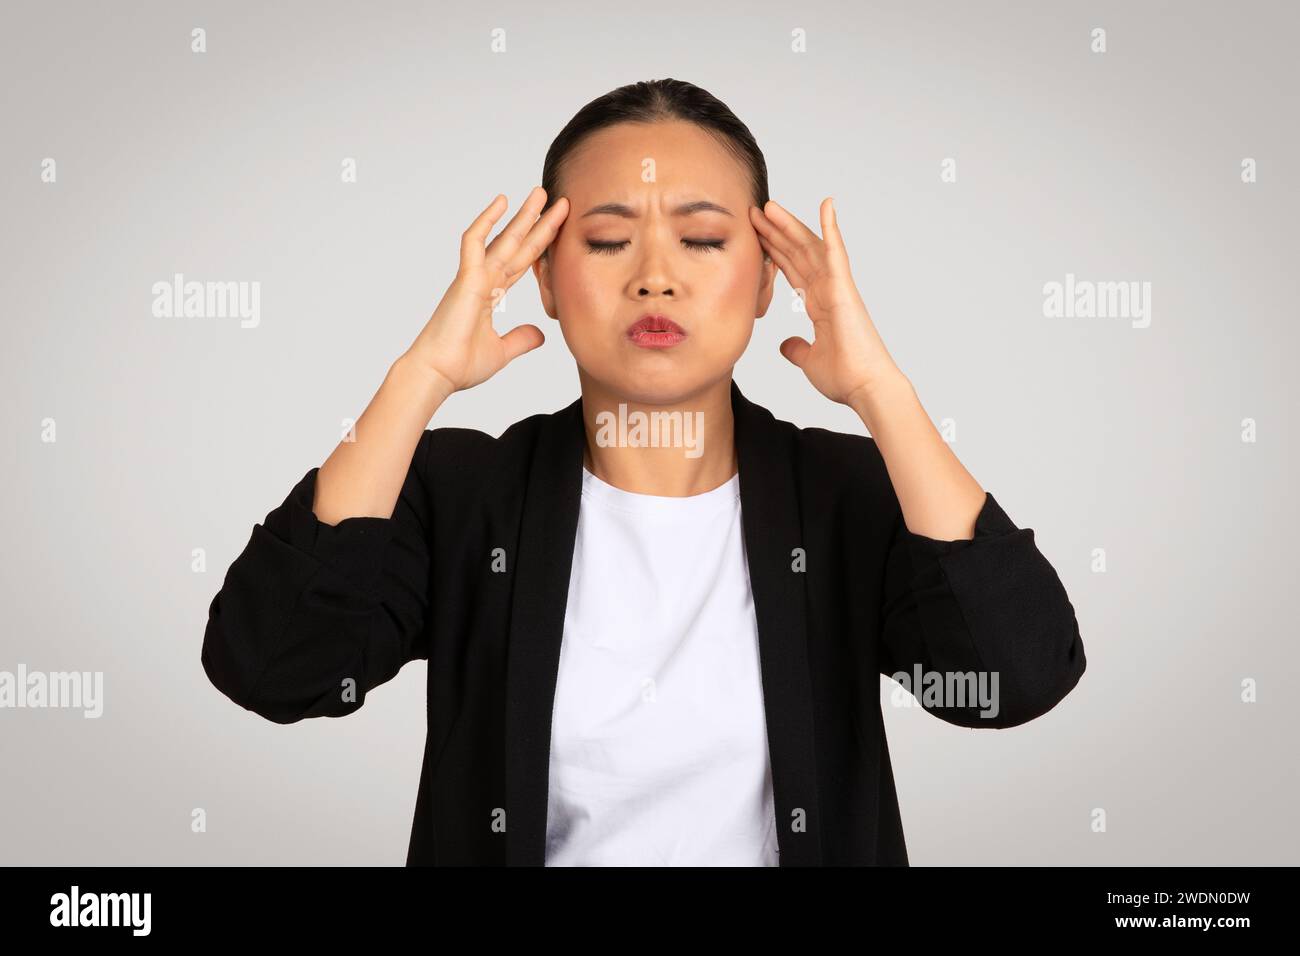 Eine gestresste asiatische Geschäftsfrau mit einem schmerzhaften Ausdruck, der den Kopf hält Stockfoto